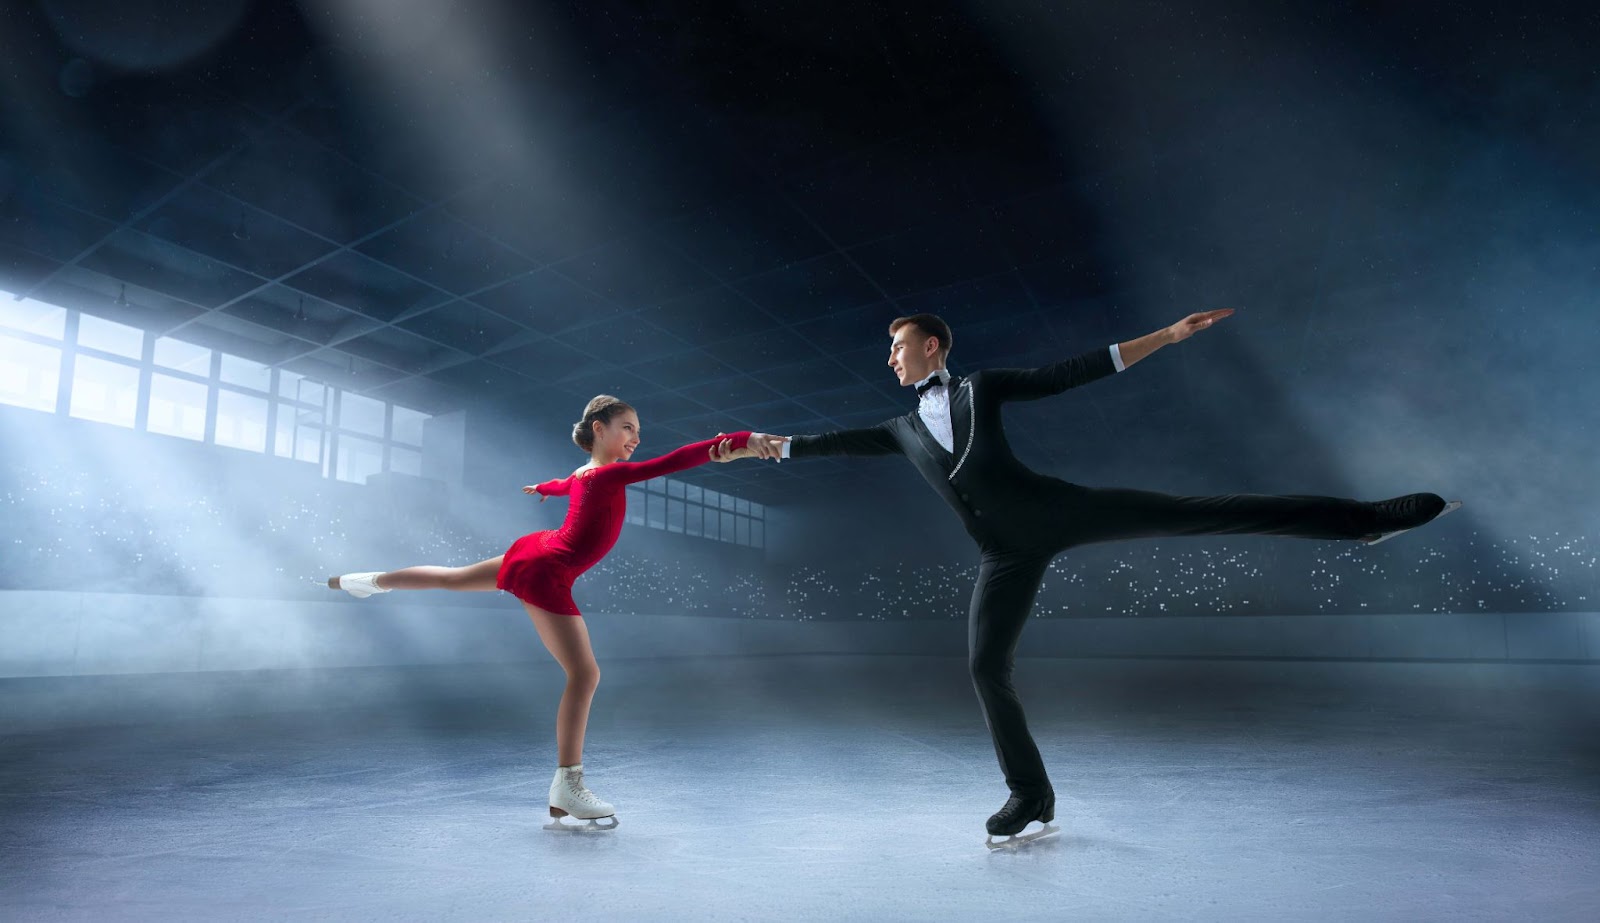 Is ice dancing easier than figure skating?